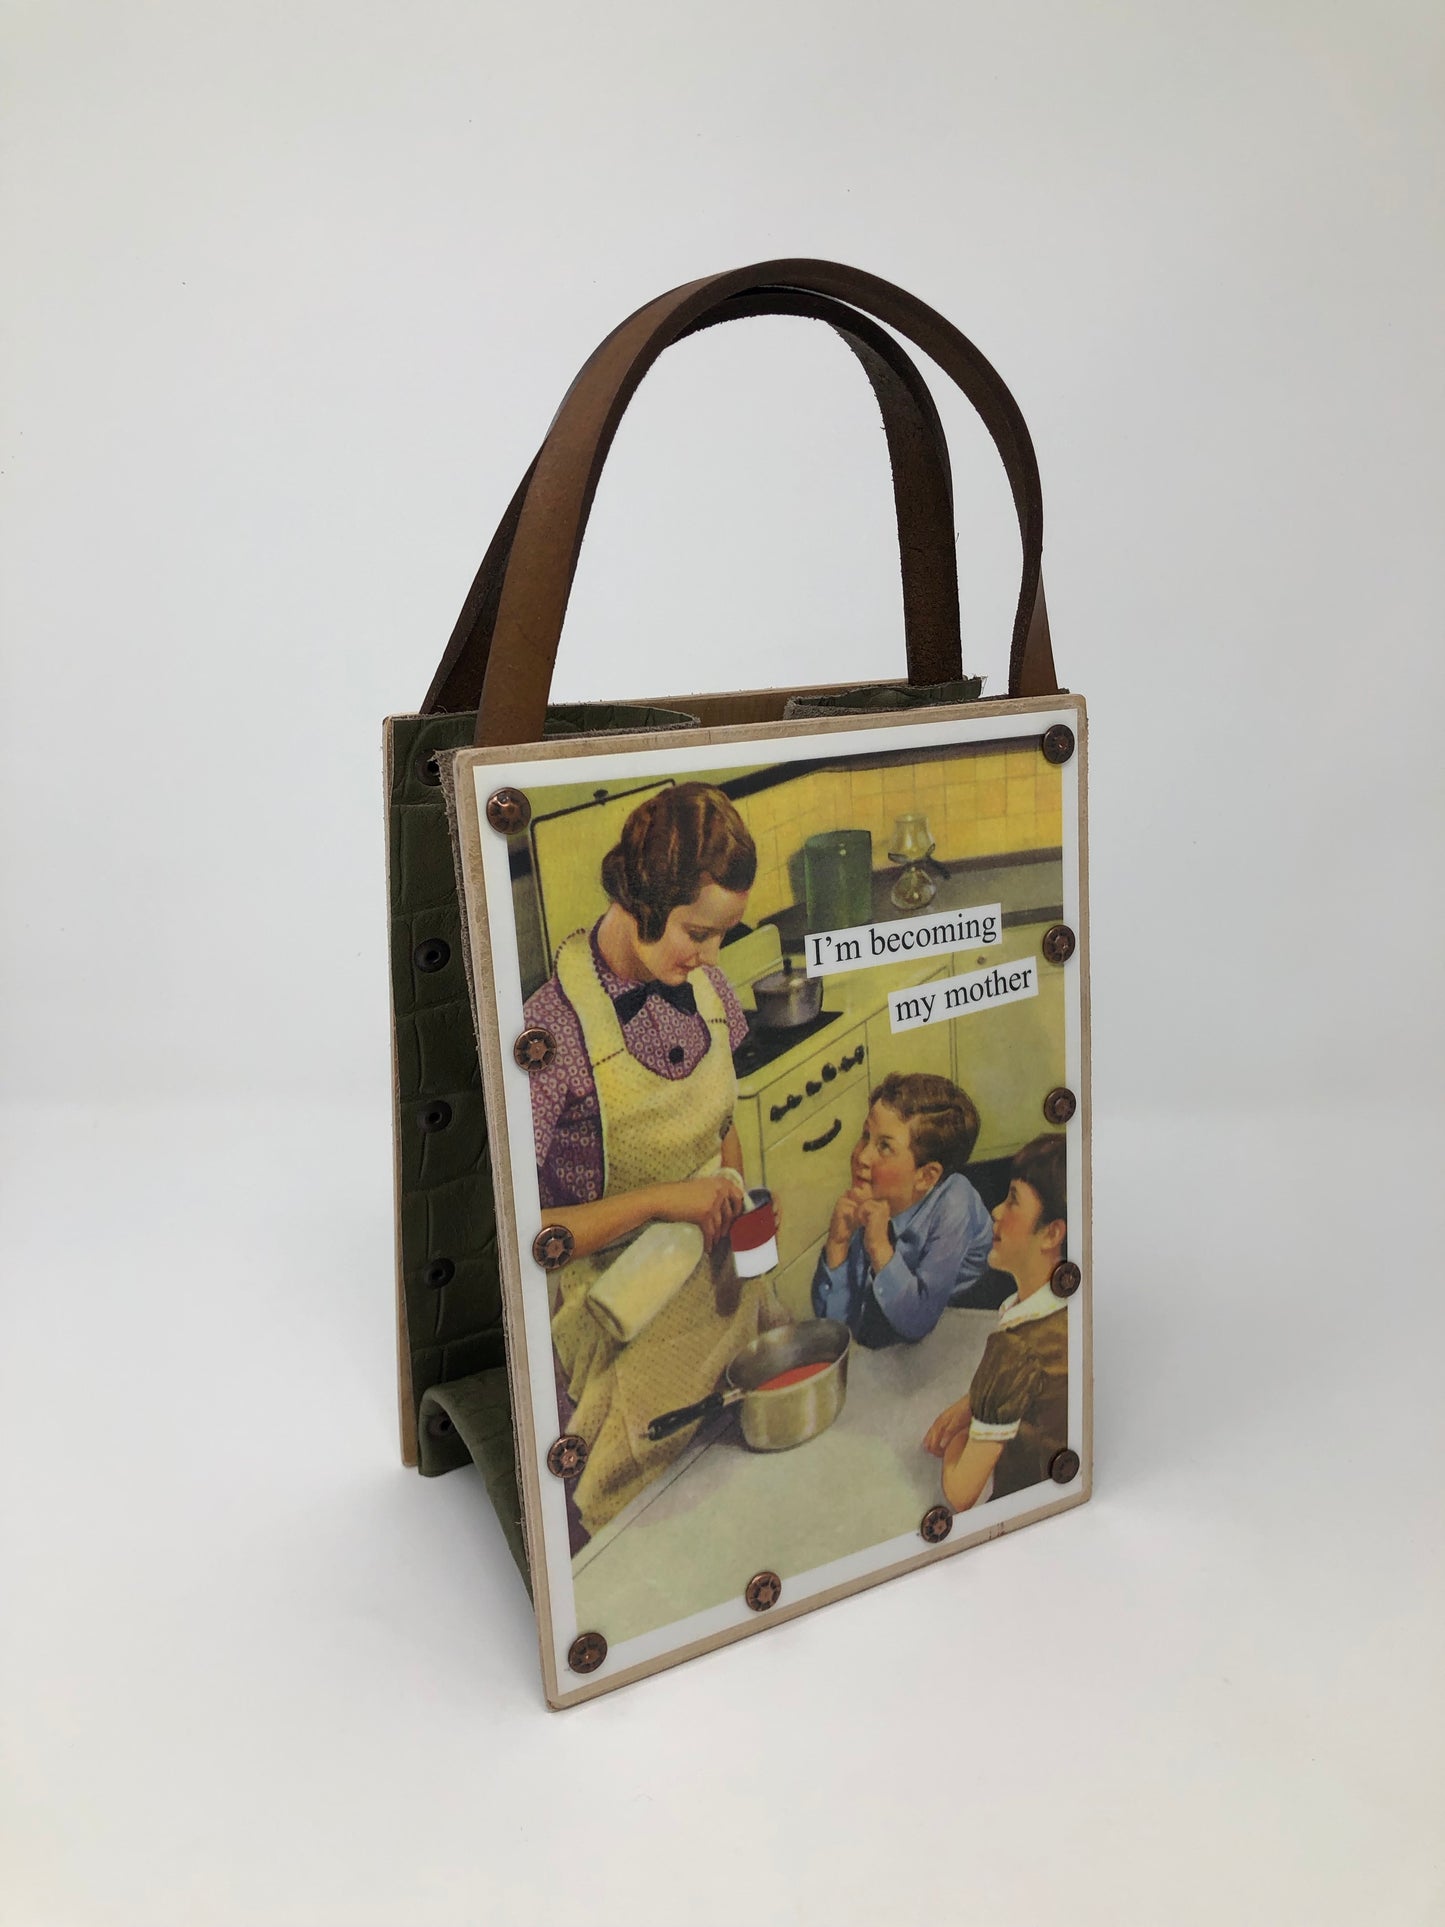 Vintage Modern Woman Handbag - I'm Becoming my Mother